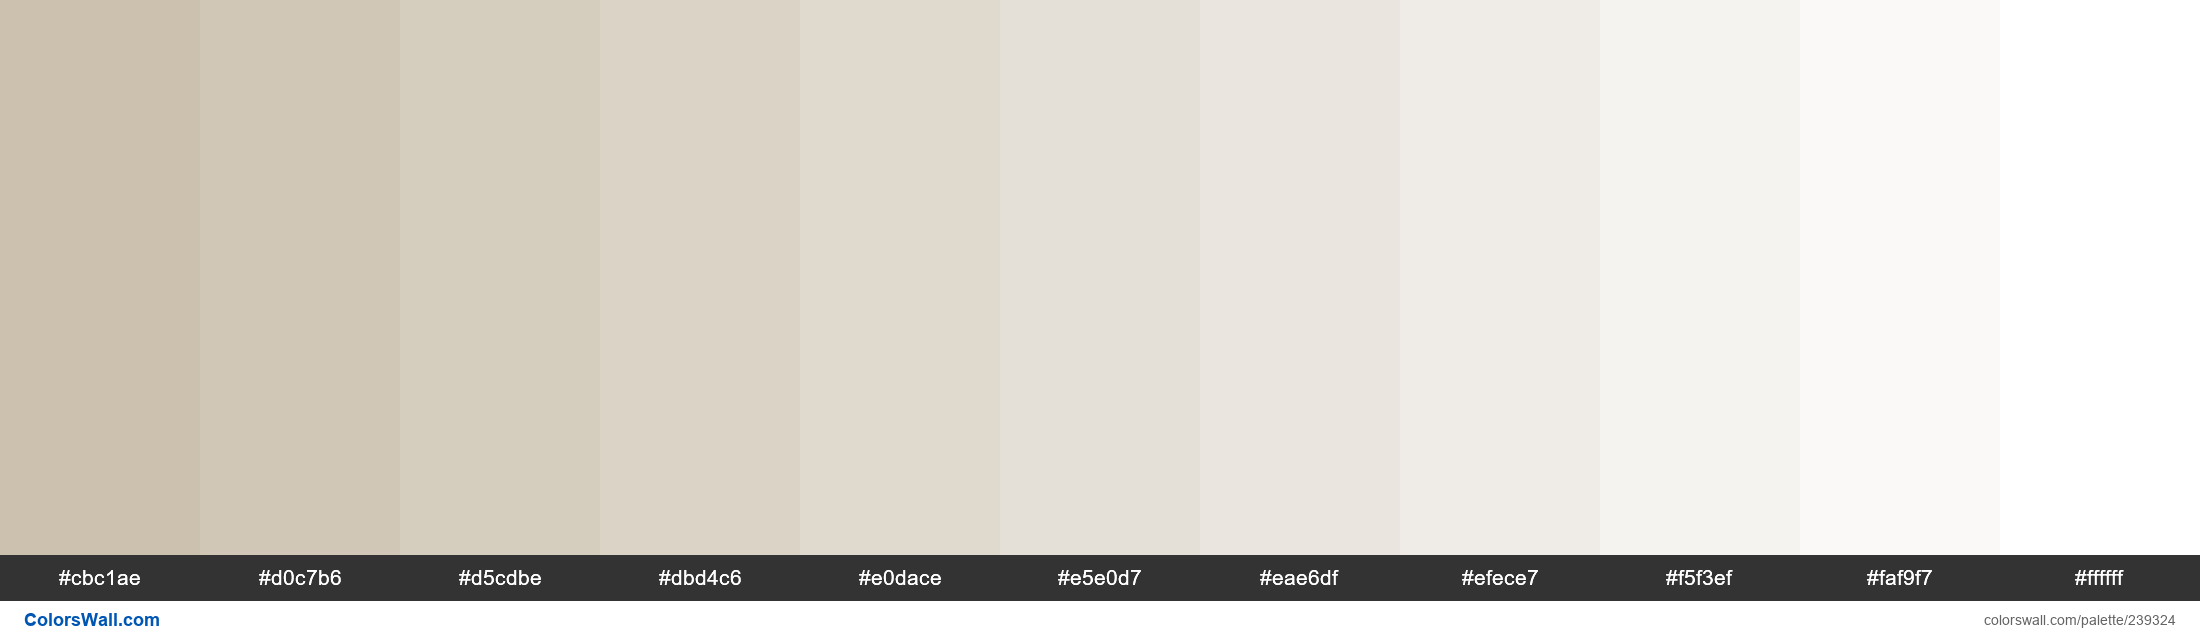 Pantone / PMS 14-1107 TCX / Oyster Gray / #cbc1ae Esquema de código de  cores Hex, Paletes e Tintas